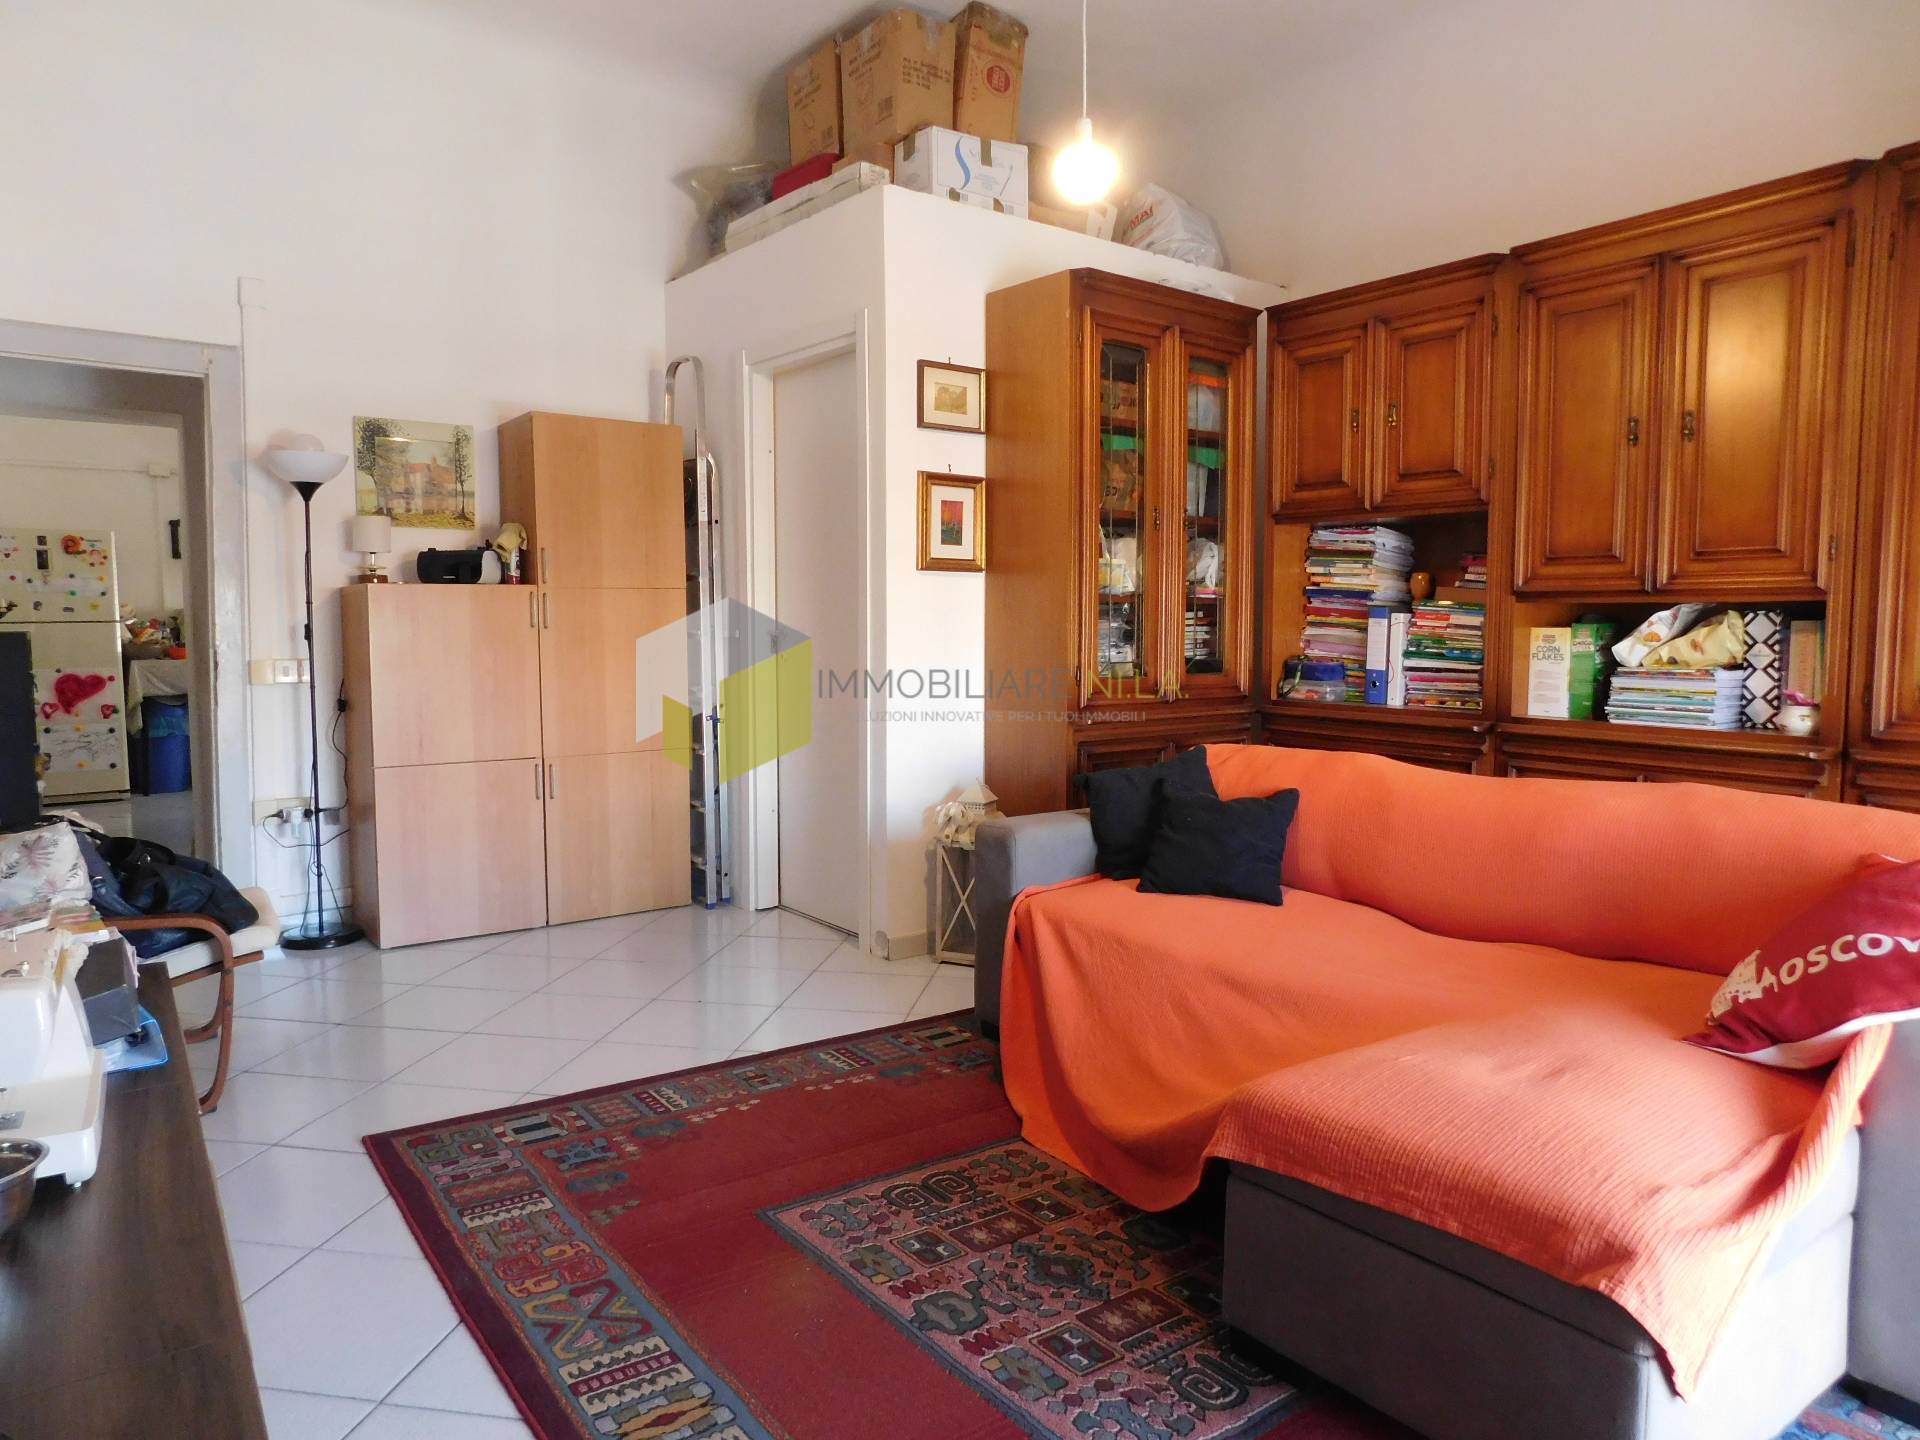 Appartamento in vendita a San Giuliano Terme, 4 locali, prezzo € 139.000 | PortaleAgenzieImmobiliari.it